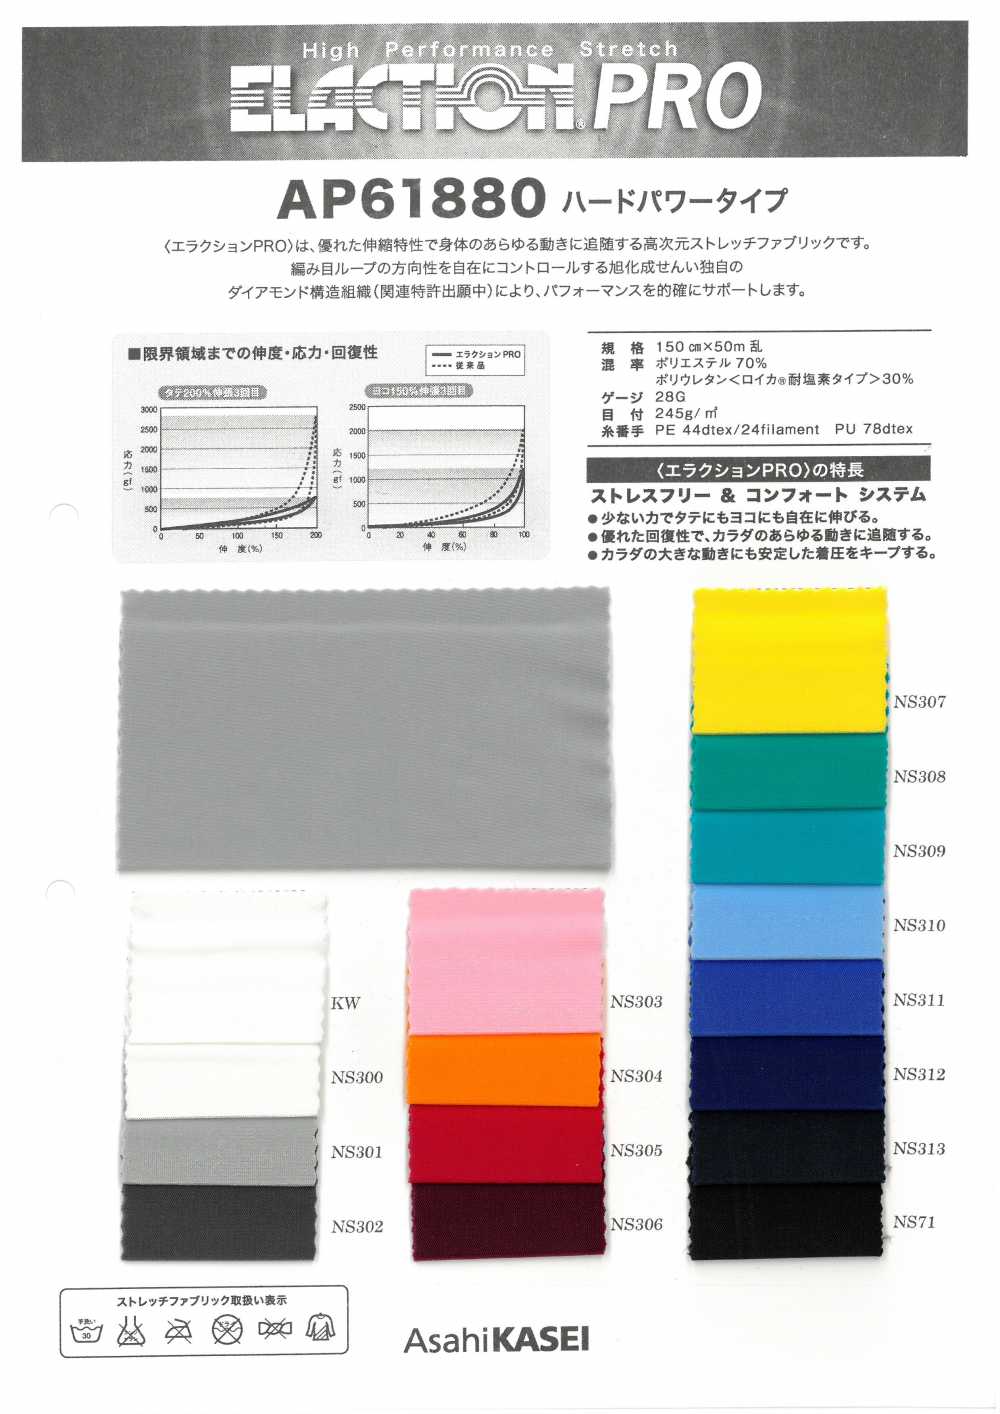 AP61880 Hochleistungs-Leistungstyp[Textilgewebe] Japan-Strecke